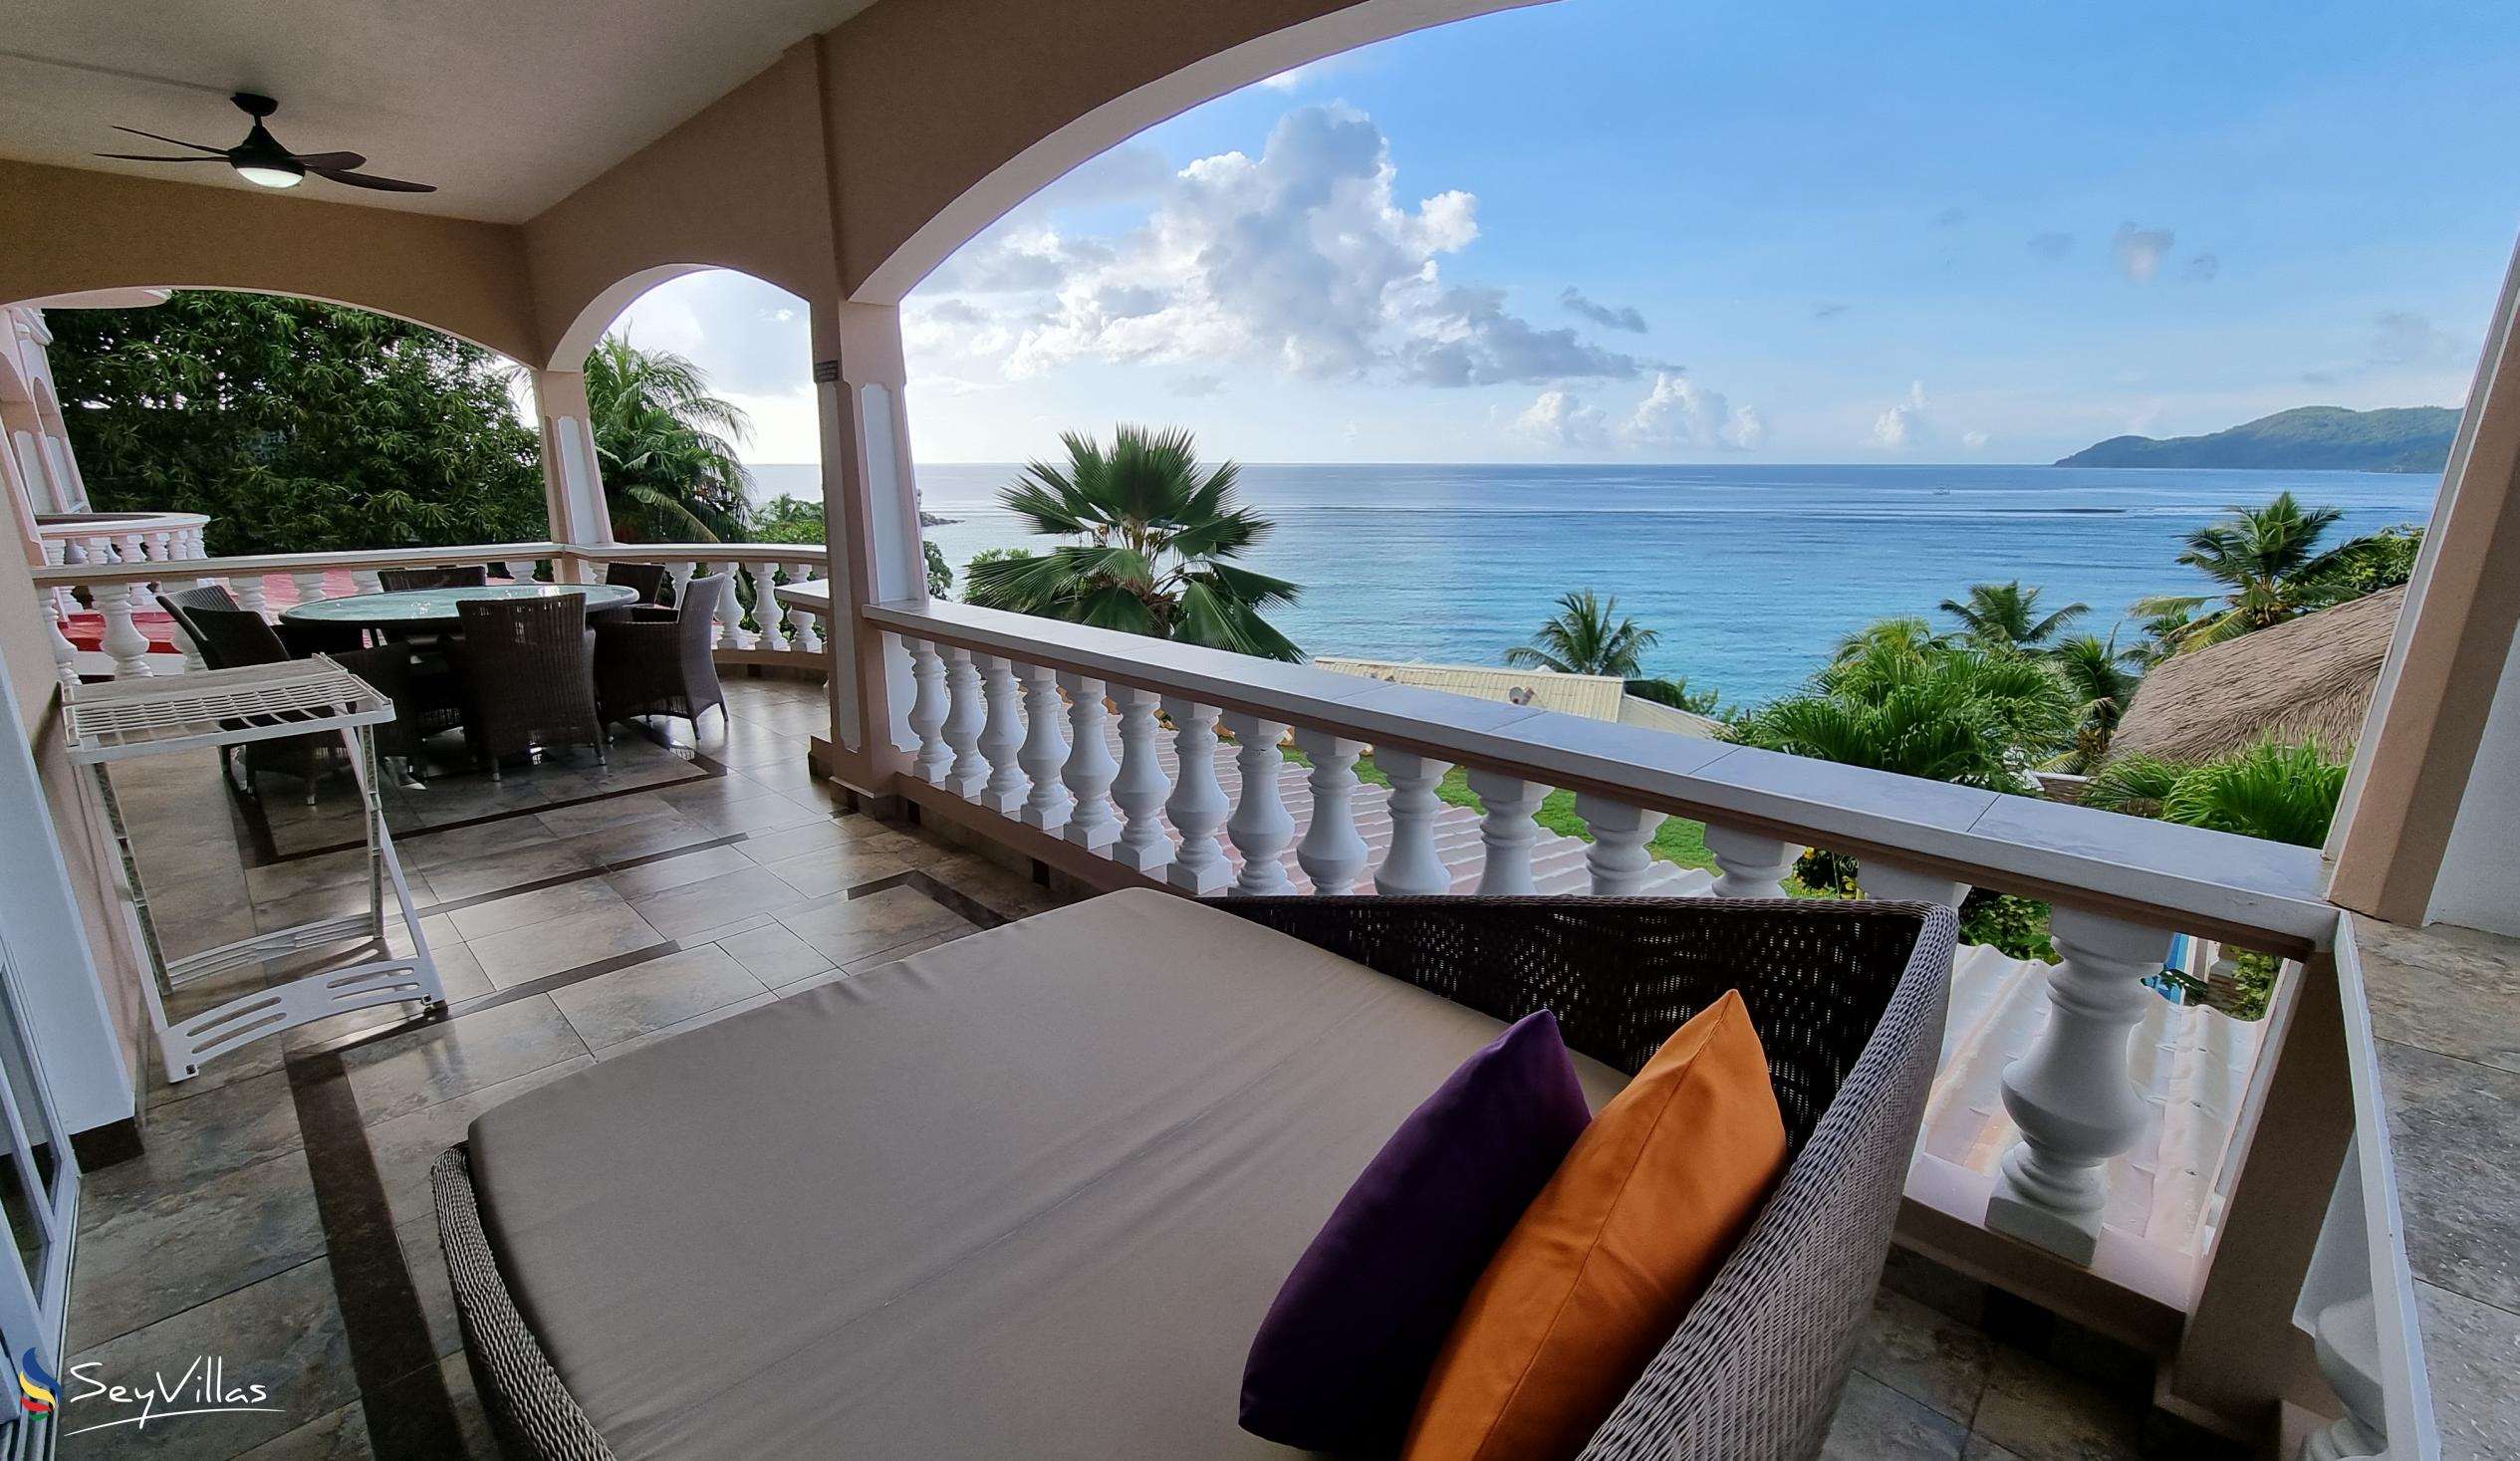 Foto 88: Au Fond de Mer View - Appartement 2 chambres avec vue sur la mer - Mahé (Seychelles)